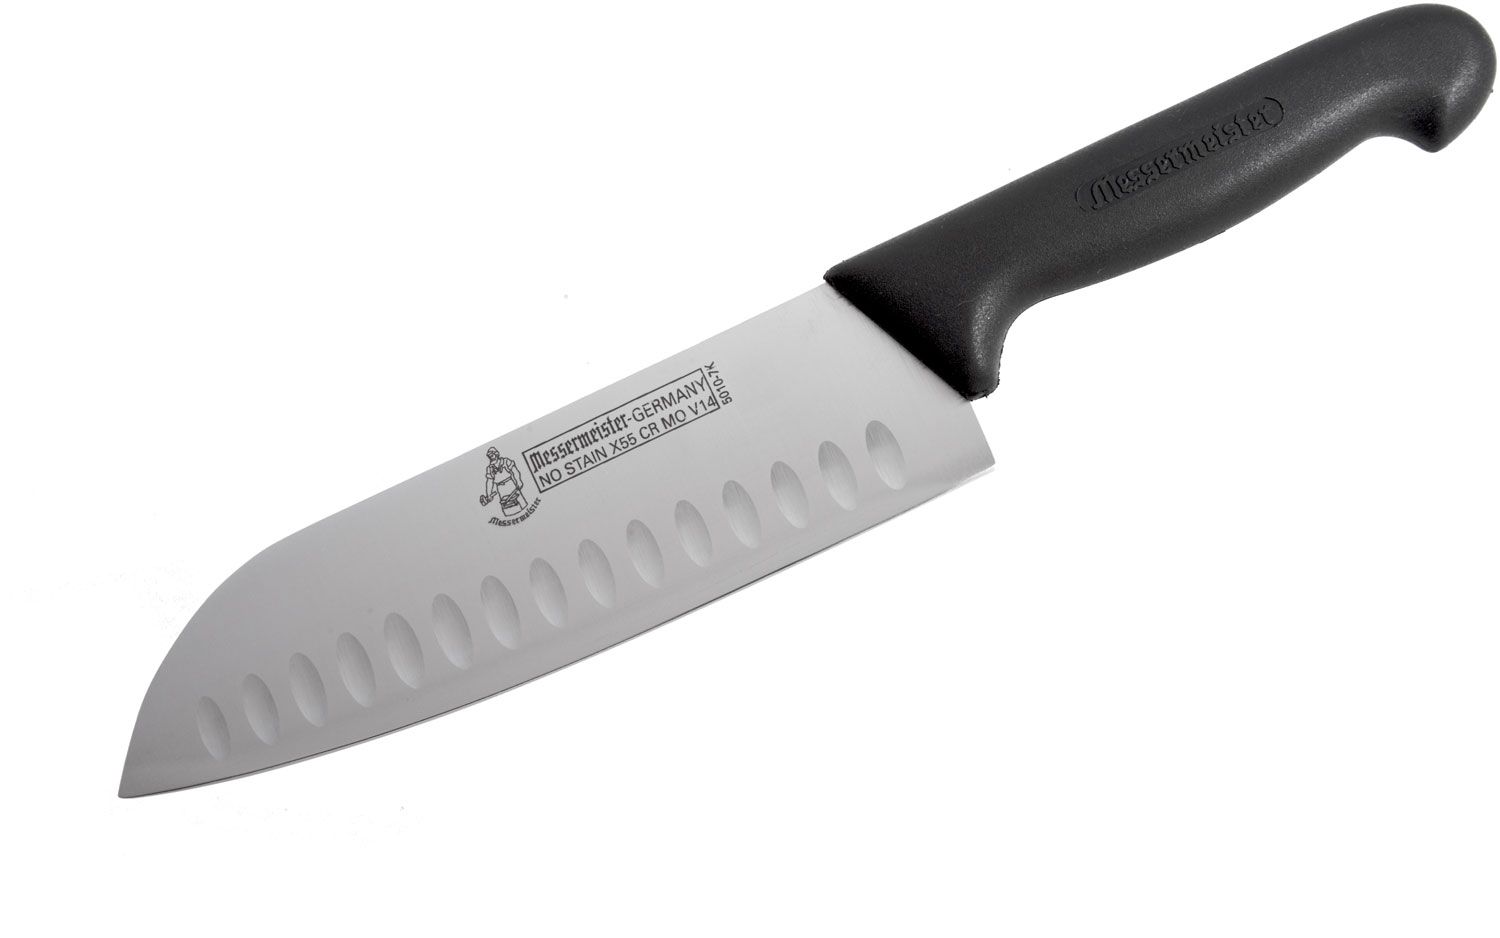 Reviews and Ratings for Svord Kiwi Santoku Chef's Knife 7-1/2